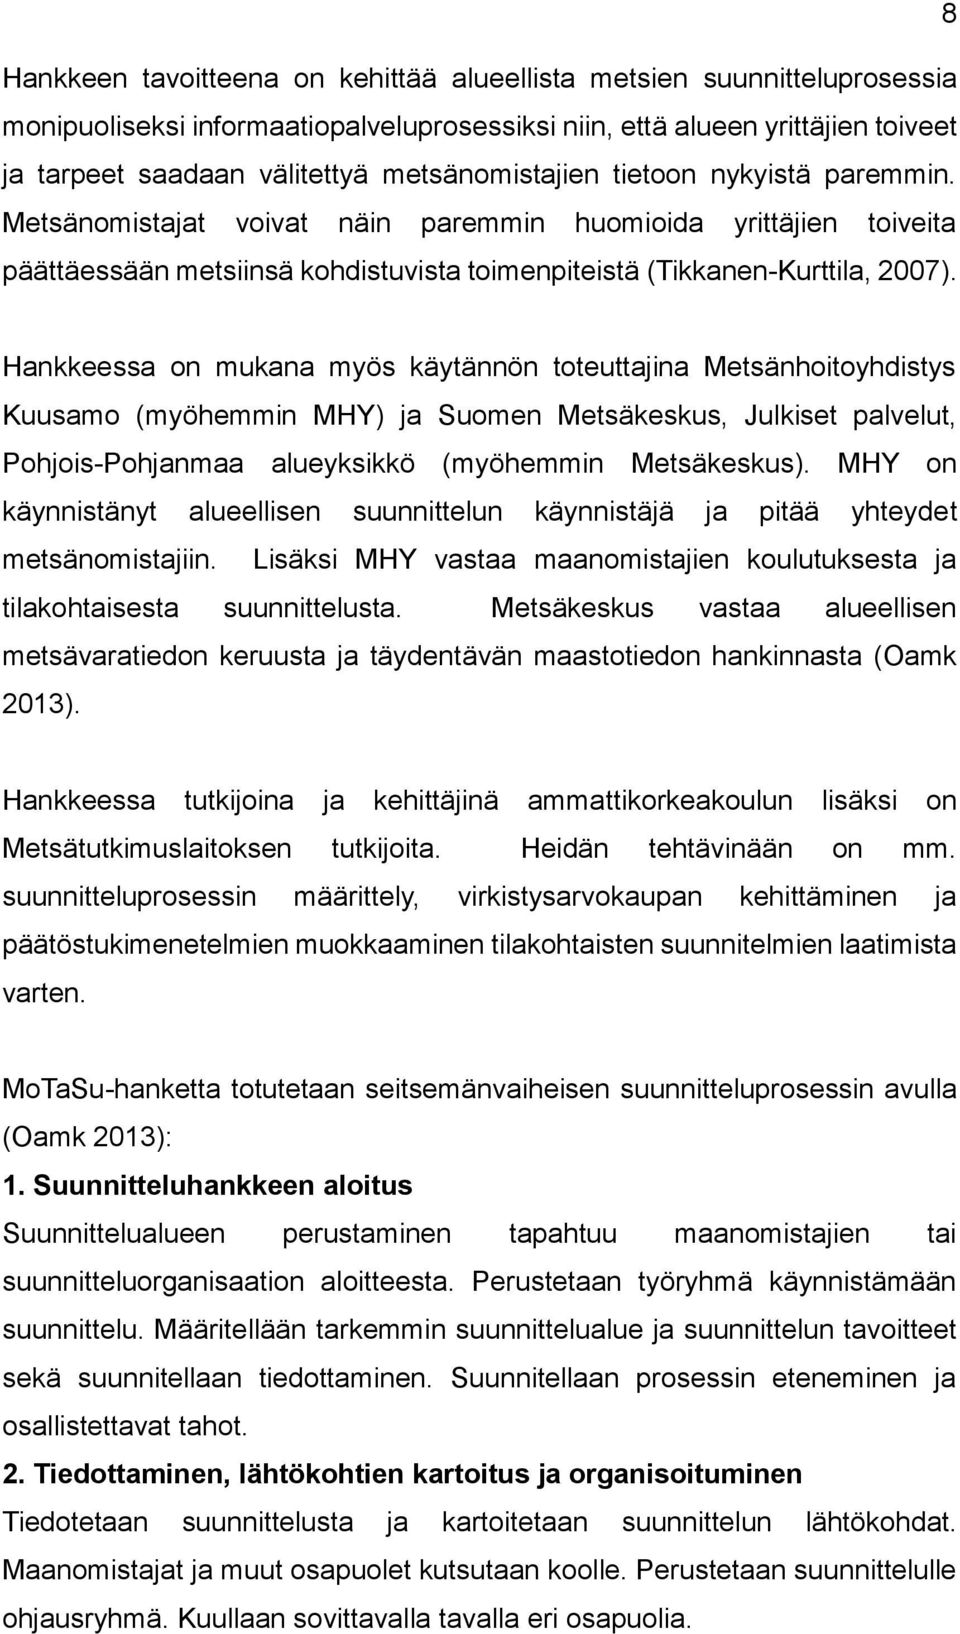 Hankkeessa on mukana myös käytännön toteuttajina Metsänhoitoyhdistys Kuusamo (myöhemmin MHY) ja Suomen Metsäkeskus, Julkiset palvelut, Pohjois-Pohjanmaa alueyksikkö (myöhemmin Metsäkeskus).